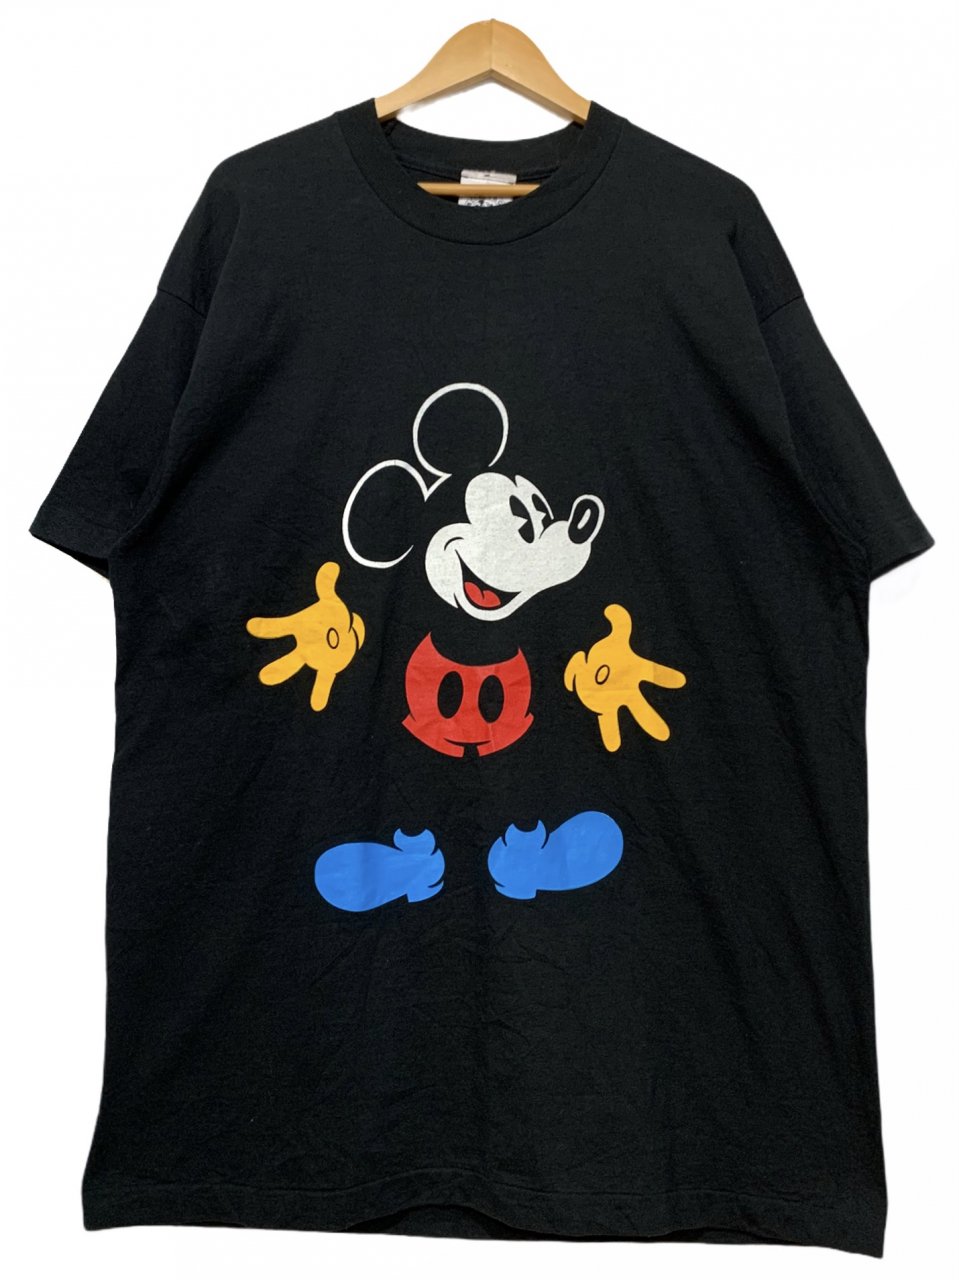 割引クーポン有 - 【未使用】ディズニー ミッキーマウス Tシャツ 90